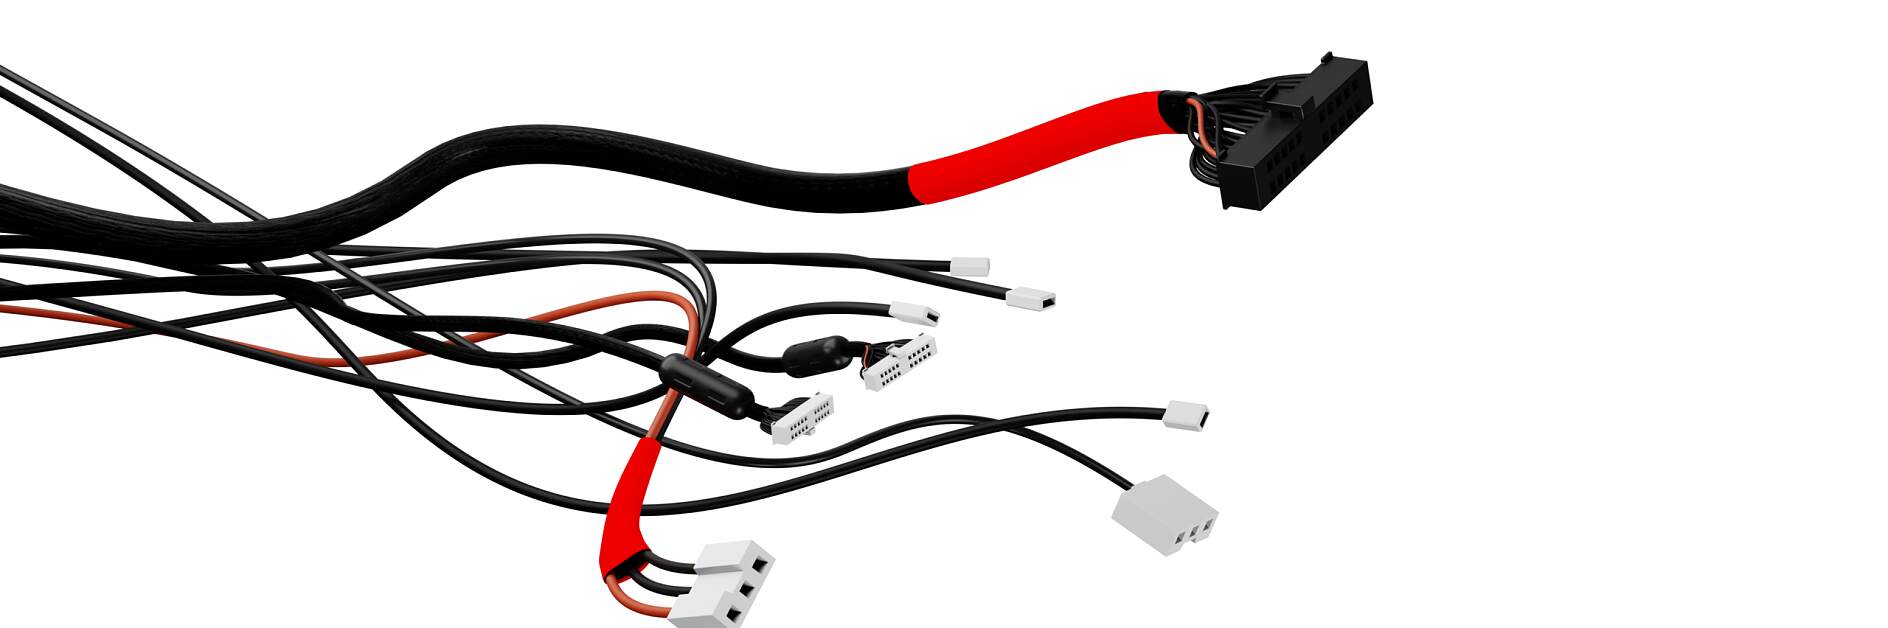 Mănunchiuri de cabluri – bandă electroizolantă